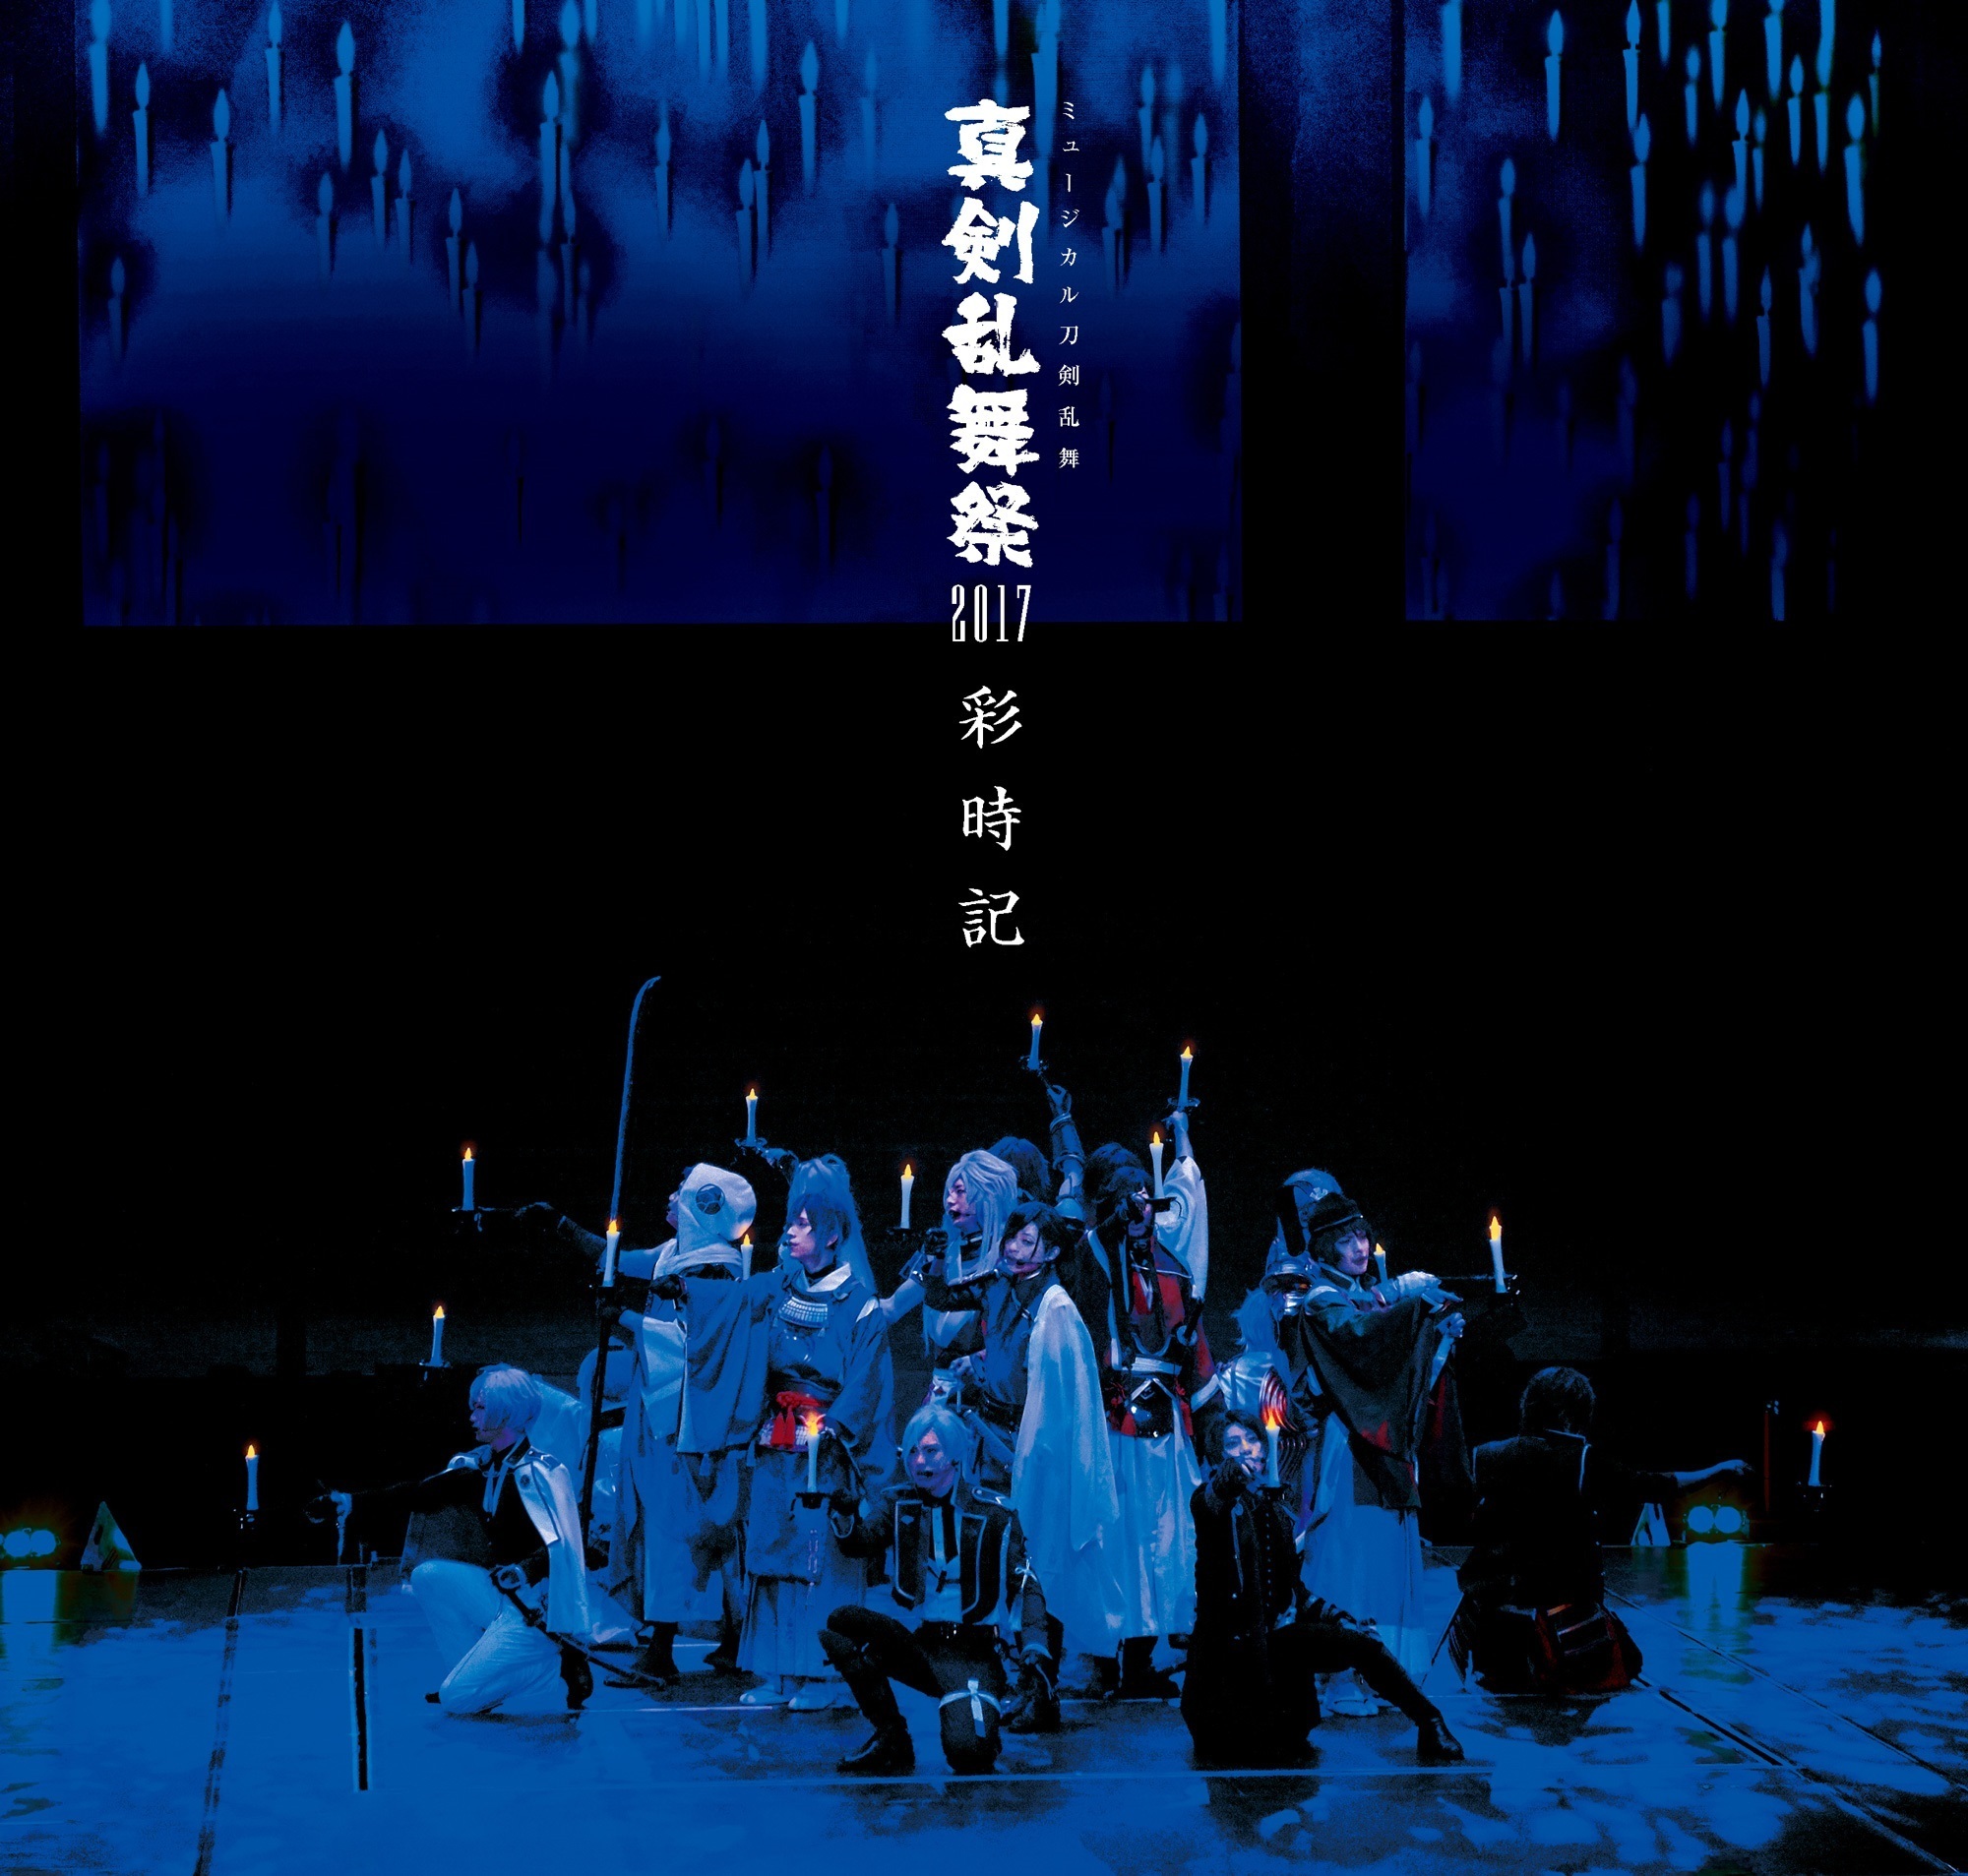 ミュージカル『刀剣乱舞』真剣乱舞祭2017 | ミュージカル『刀剣乱舞』公式ホームページ